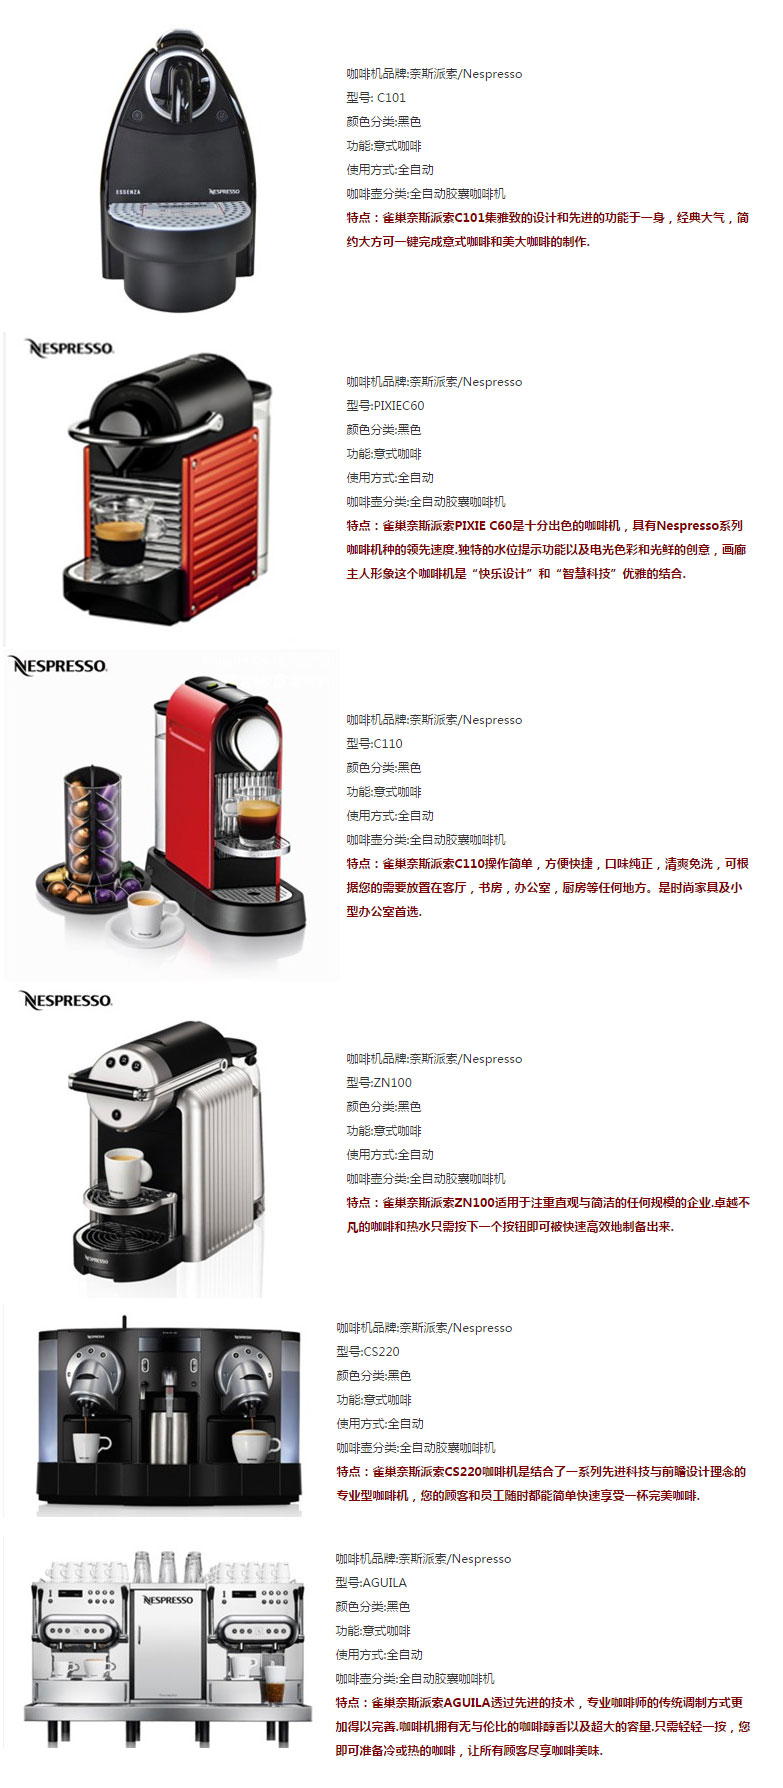 奈斯派索nespresso咖啡机_奈斯派索nespresso咖啡机价格_nespresso胶囊咖啡机系列.jpg